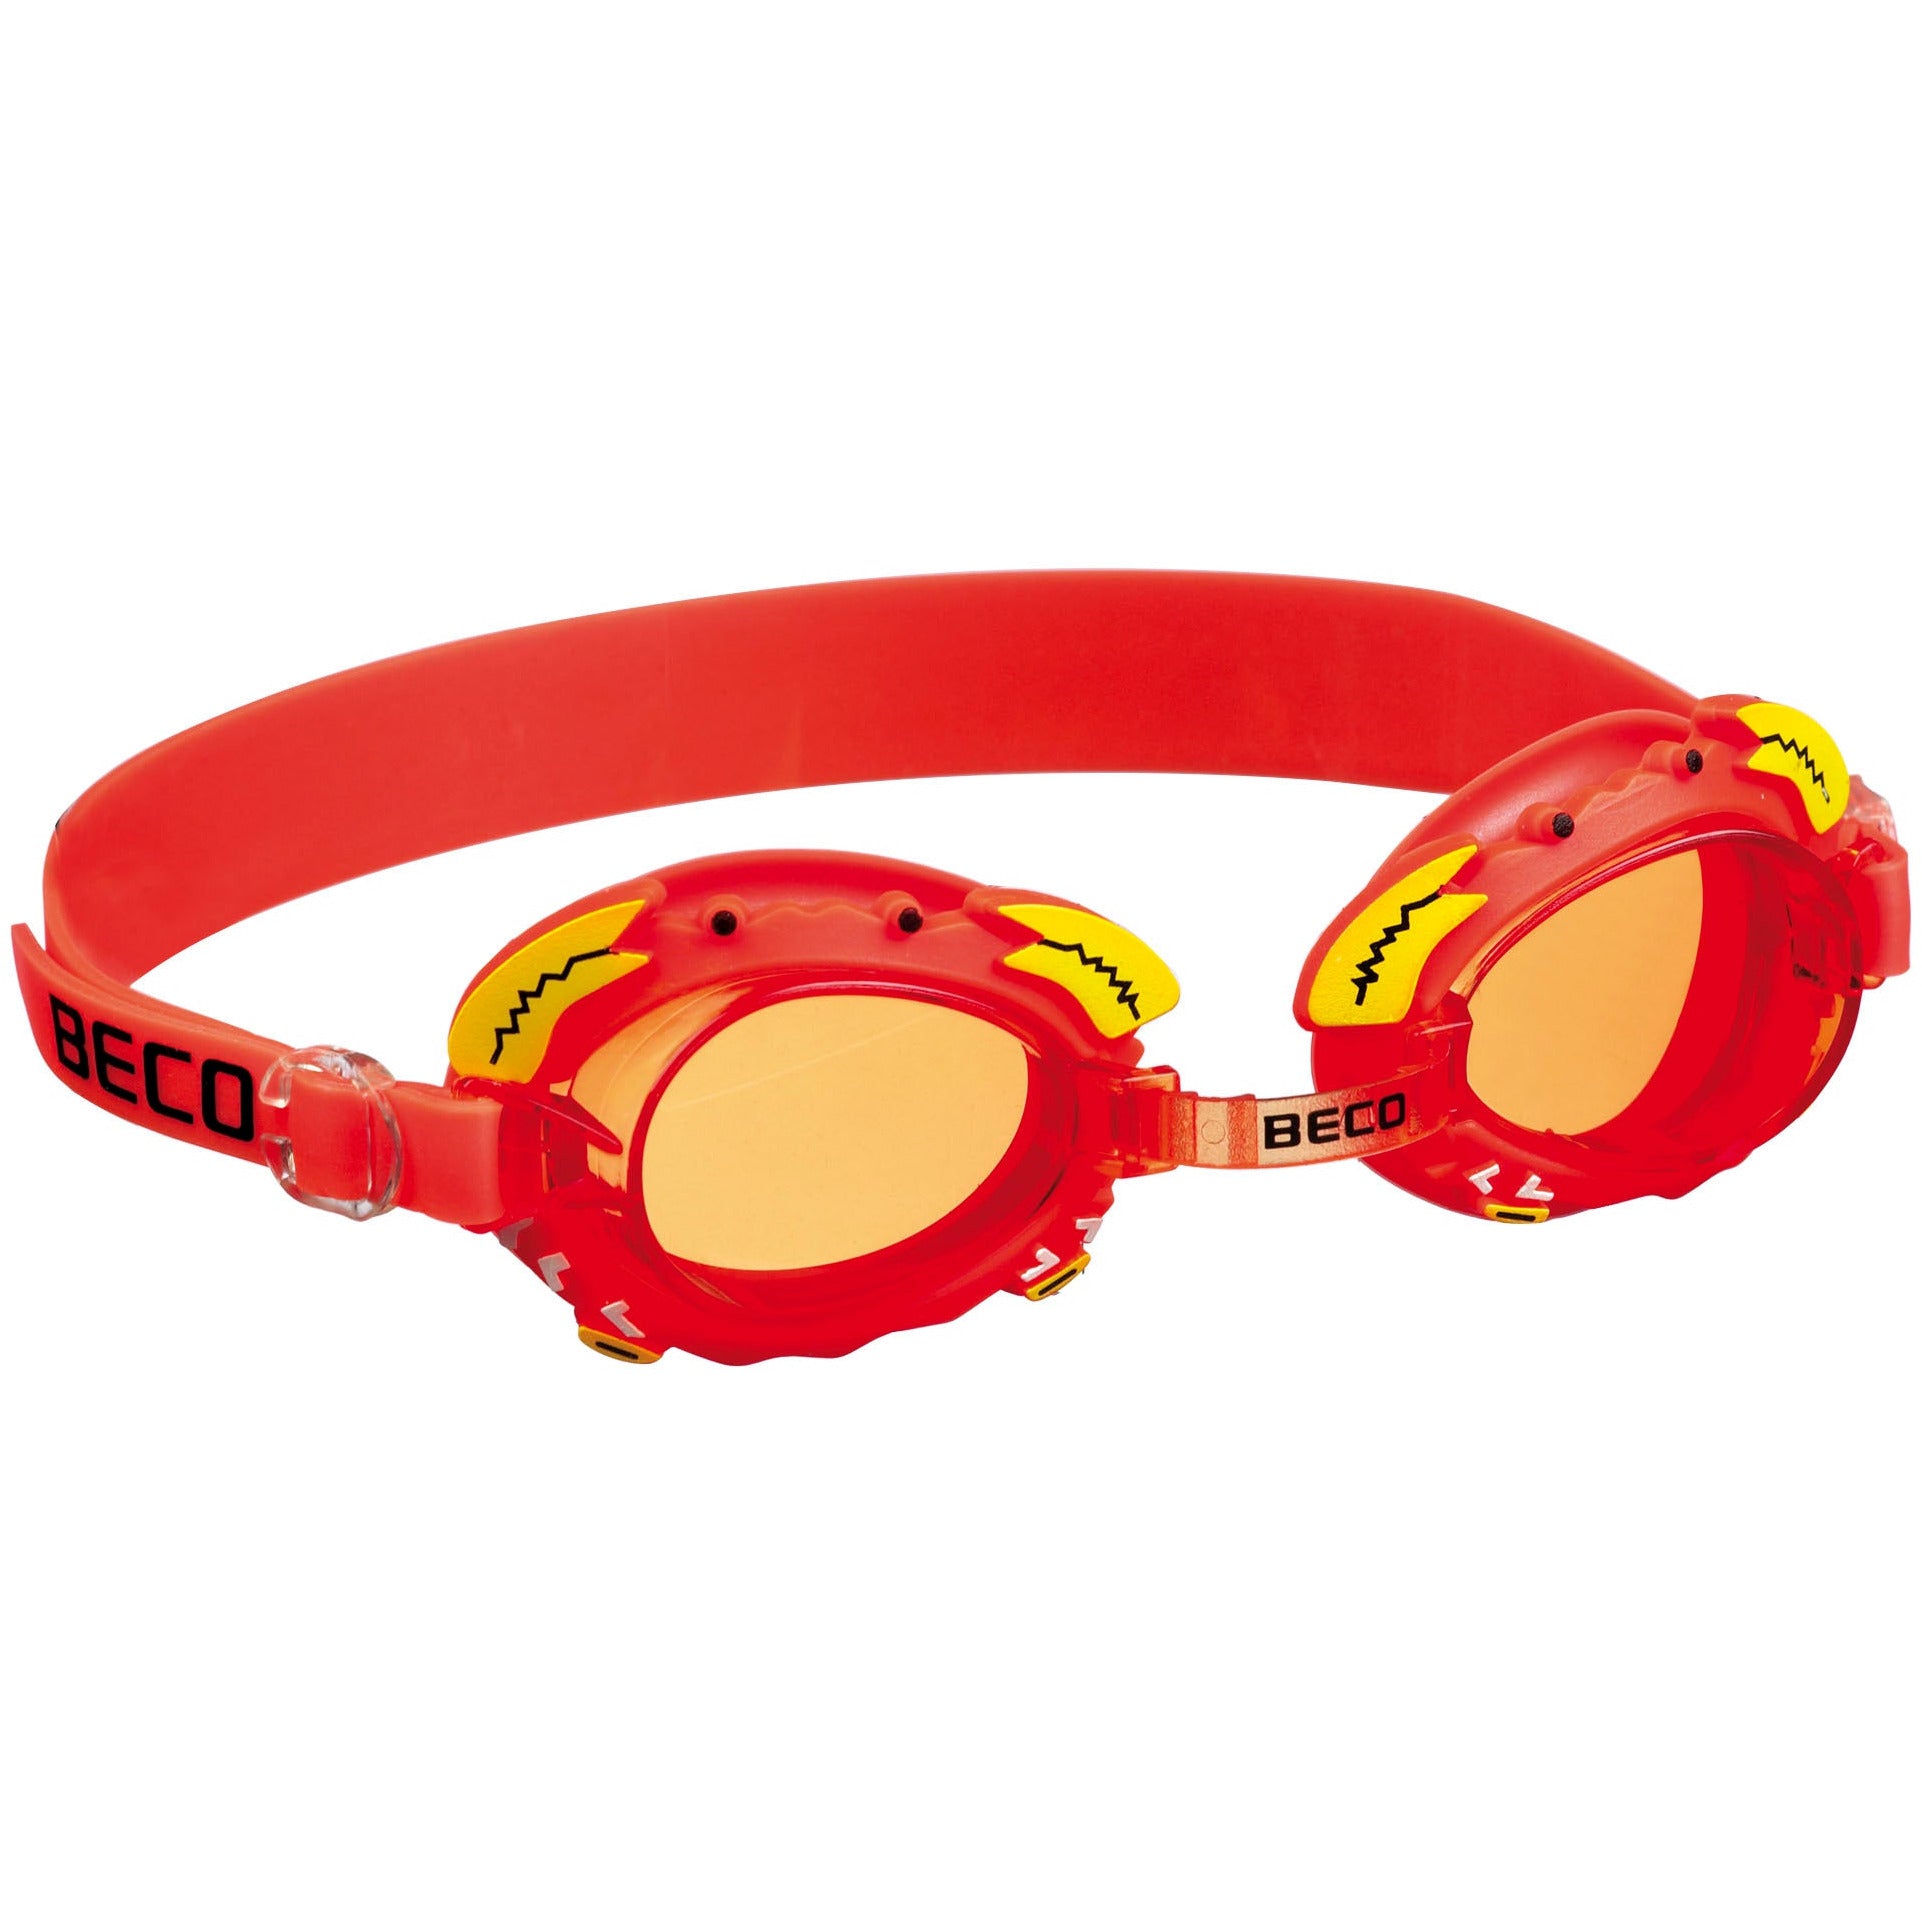 Se BECO "Palma" svømmebriller til børn 4 år+ - Rød hos Sandlegetøj.dk